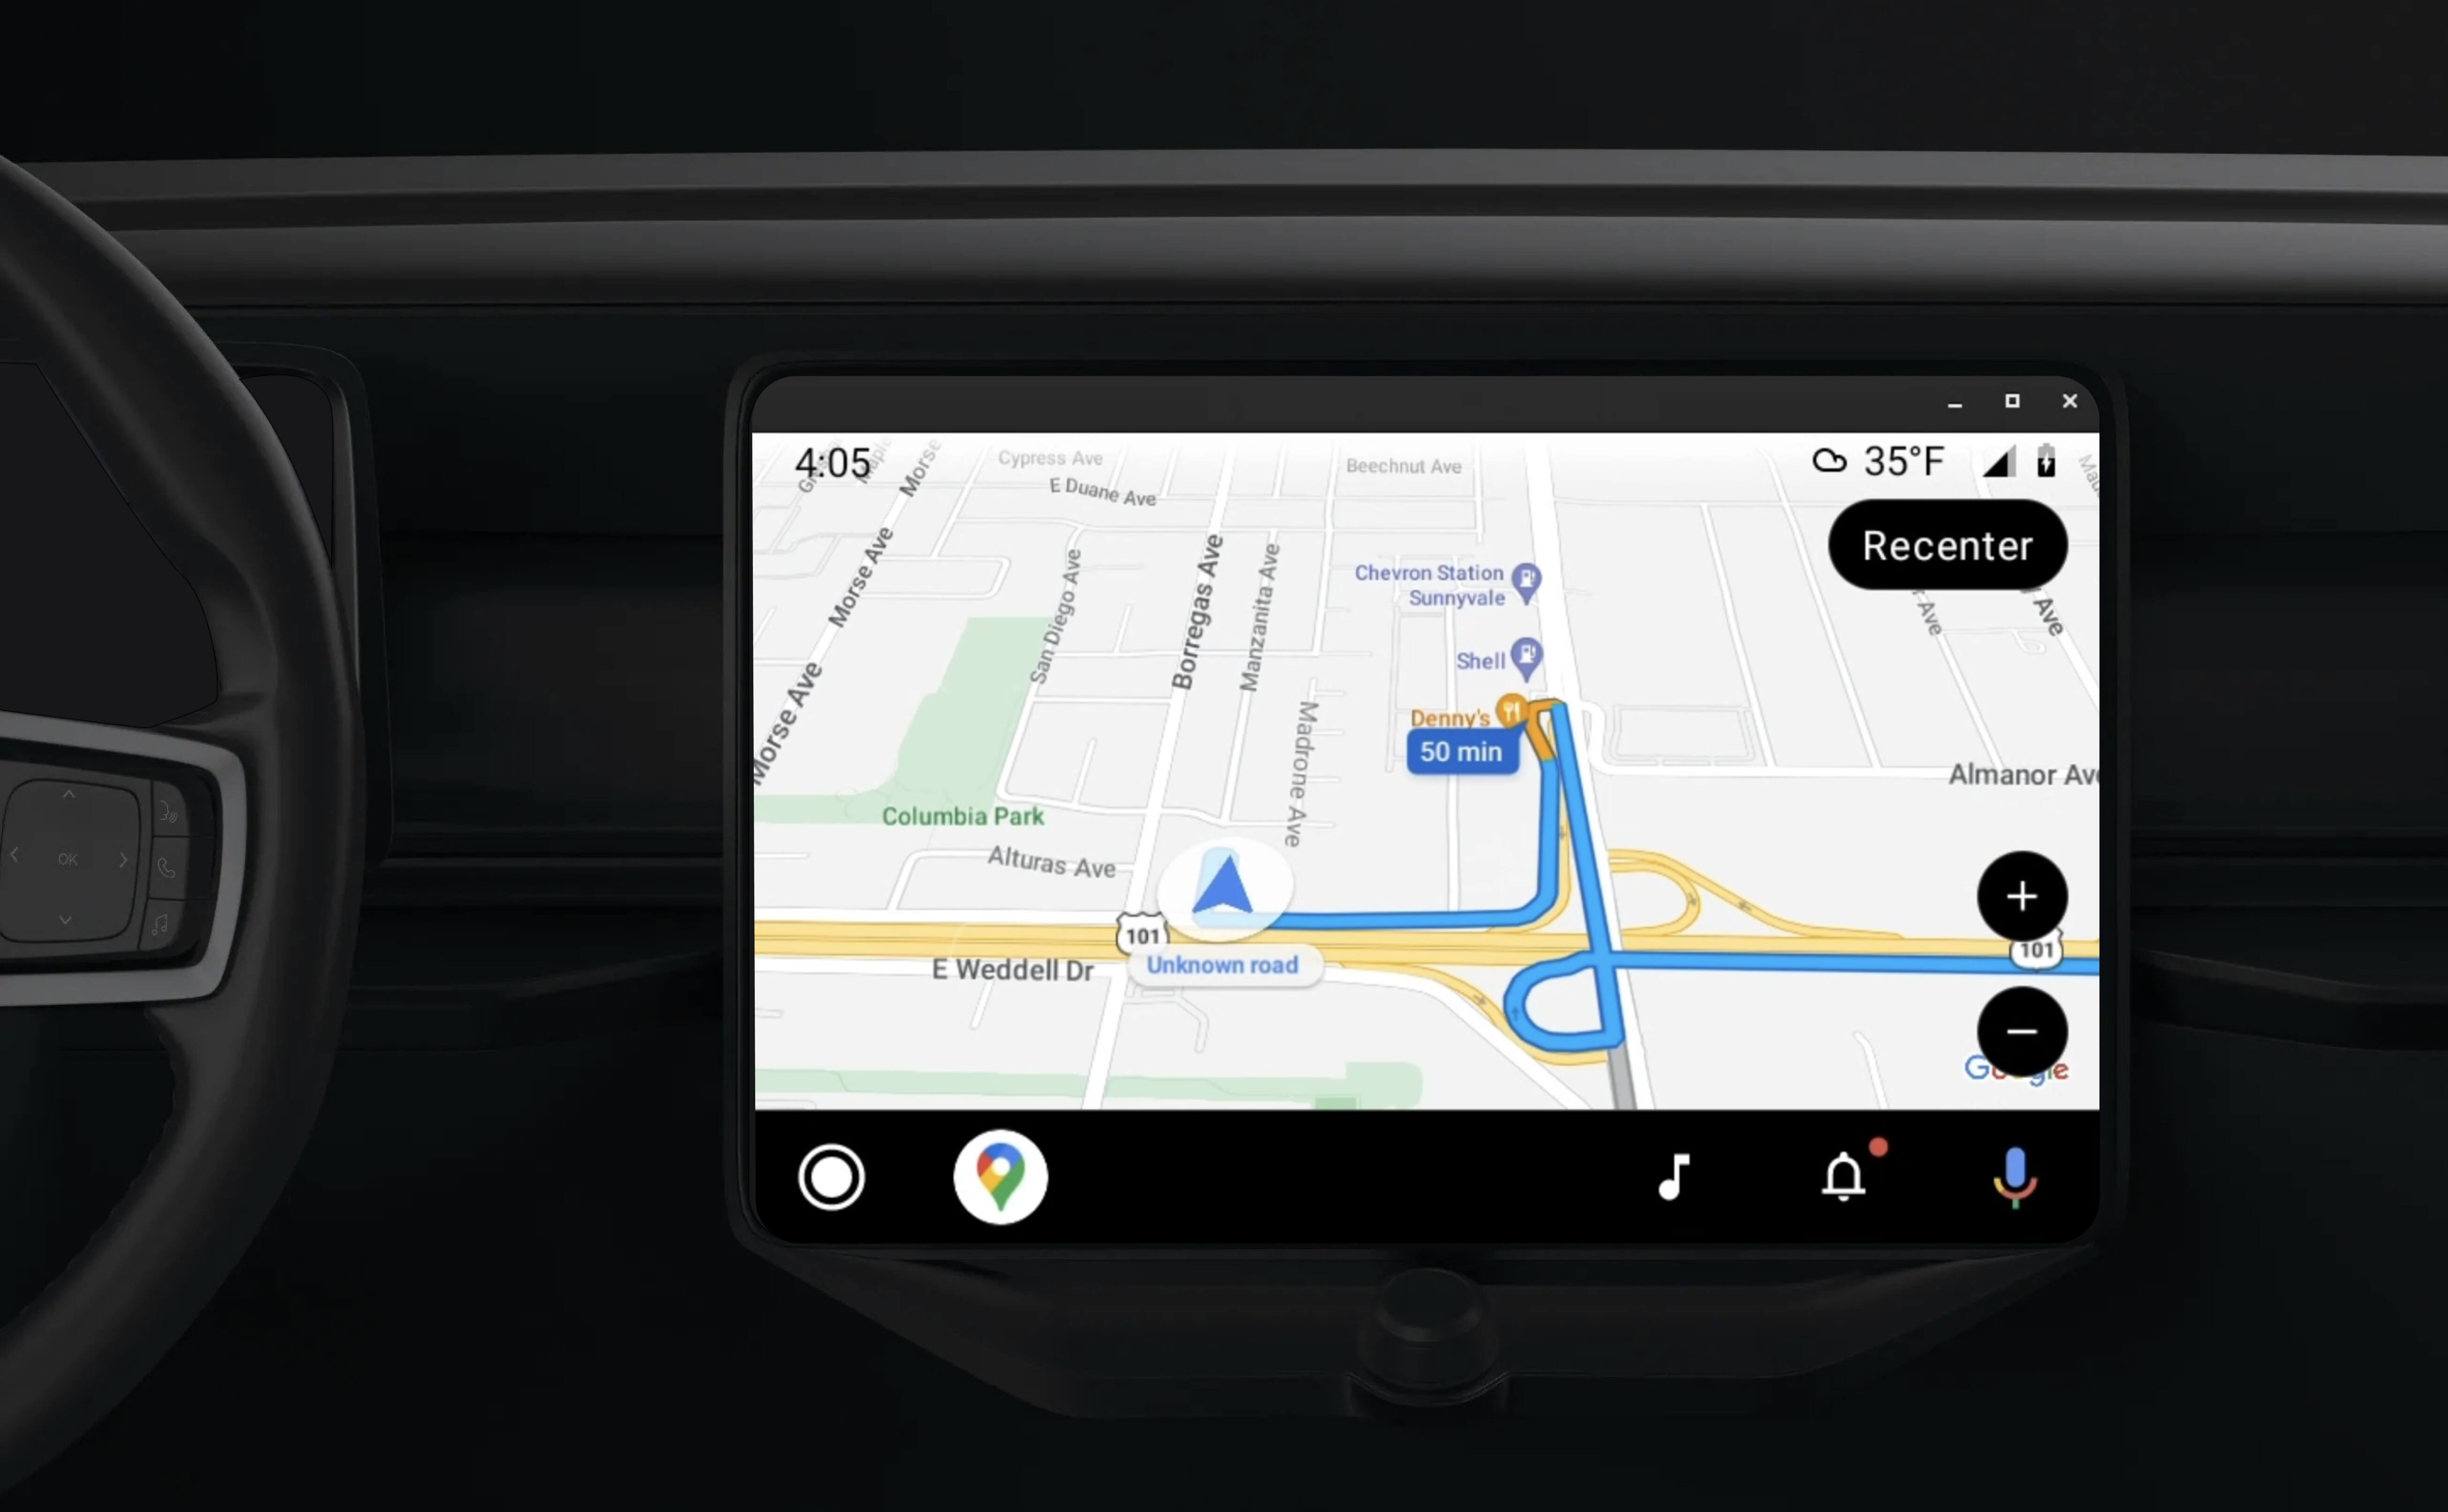 ระบบเครื่องเสียงแบบ In-dash ที่แสดงการนำทางพร้อมคำแนะนำโดยใช้แอปที่เปิดใช้
สำหรับ Android Auto